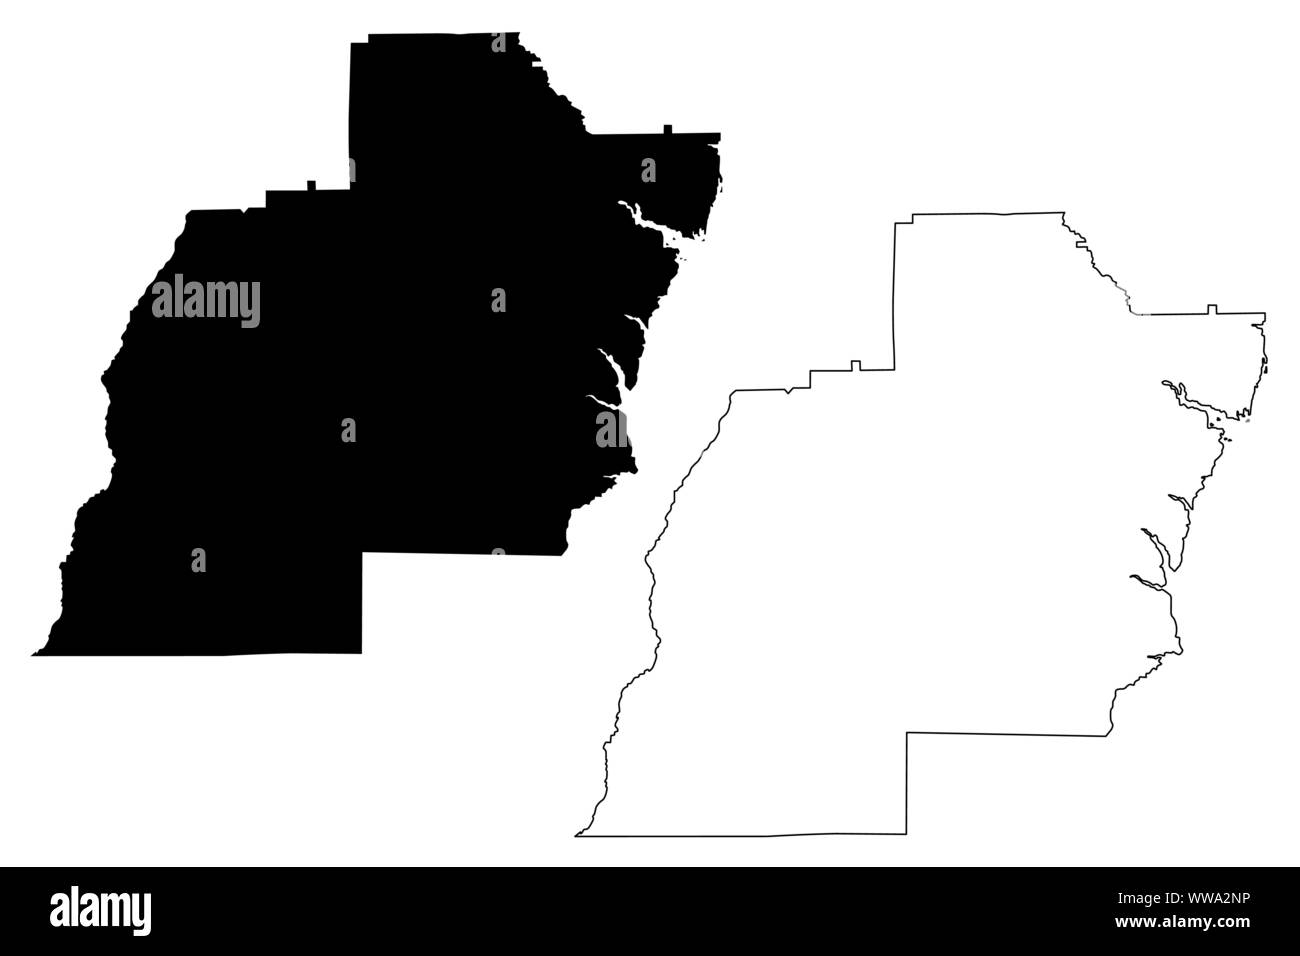 Barbour County, Alabama (Grafschaften in Alabama, Vereinigte Staaten von Amerika, USA, USA, USA) Karte Vektor-illustration, kritzeln Skizze Barbour Karte Stock Vektor